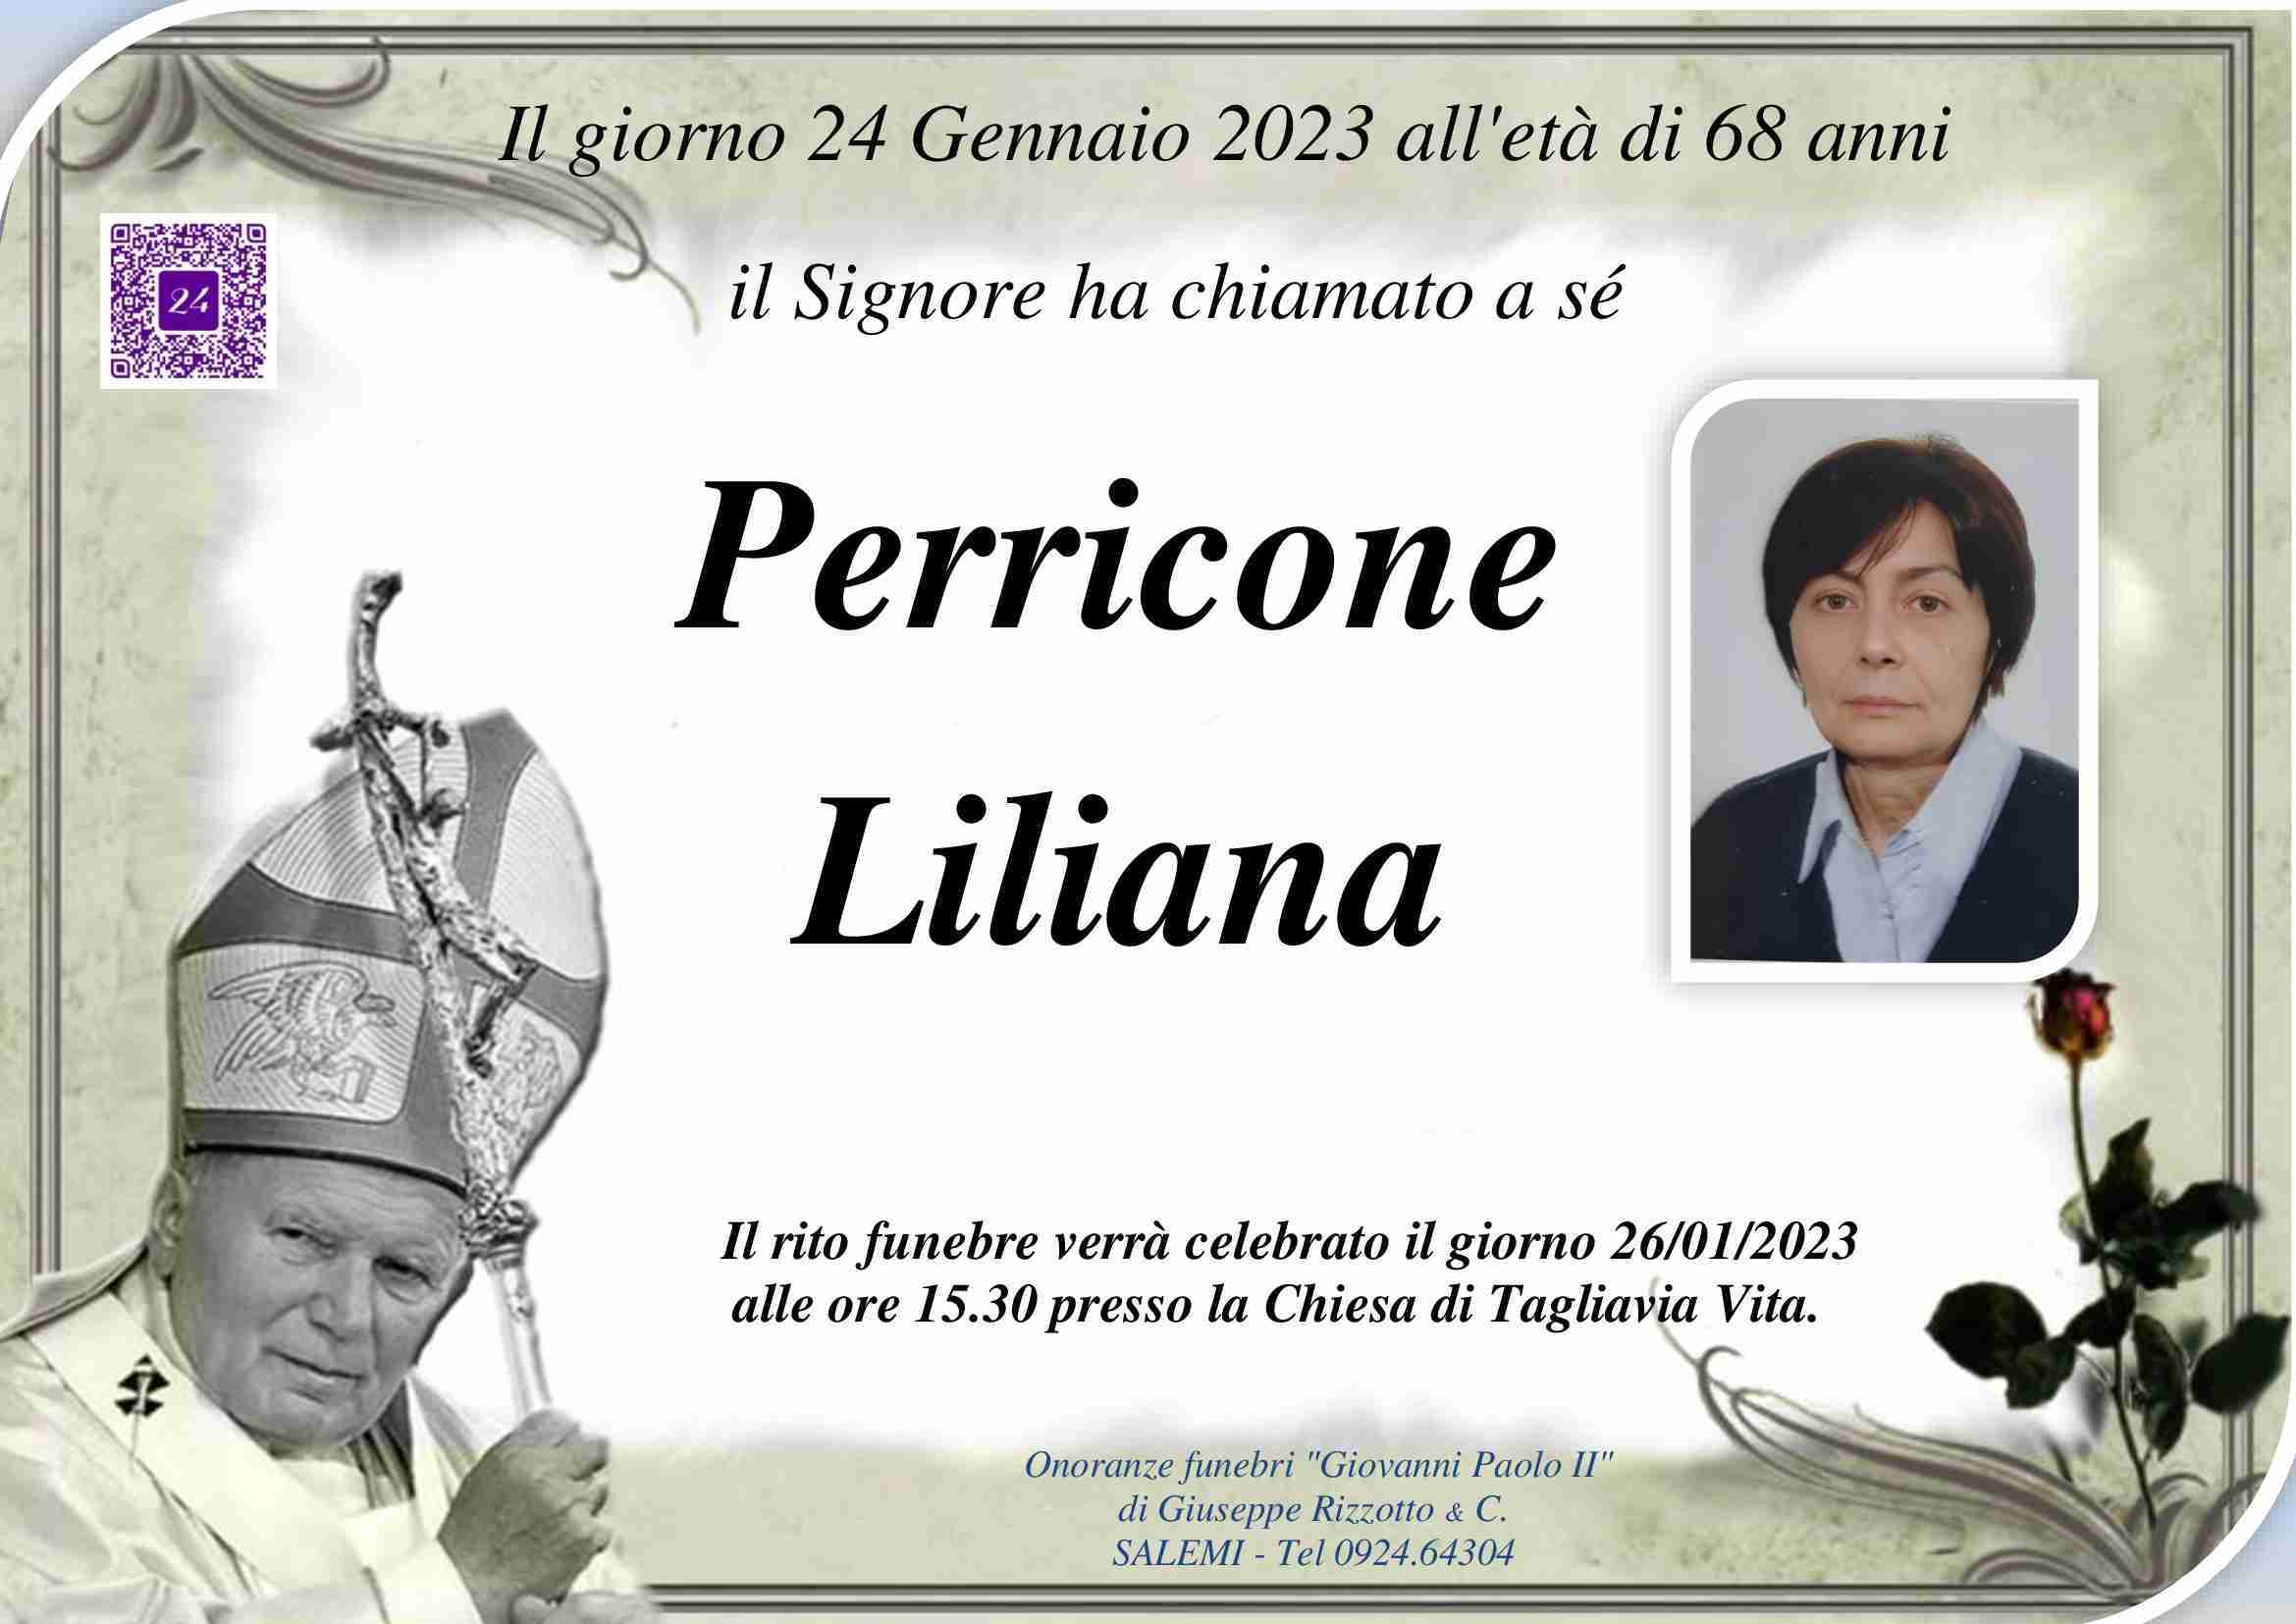 Liliana Perricone